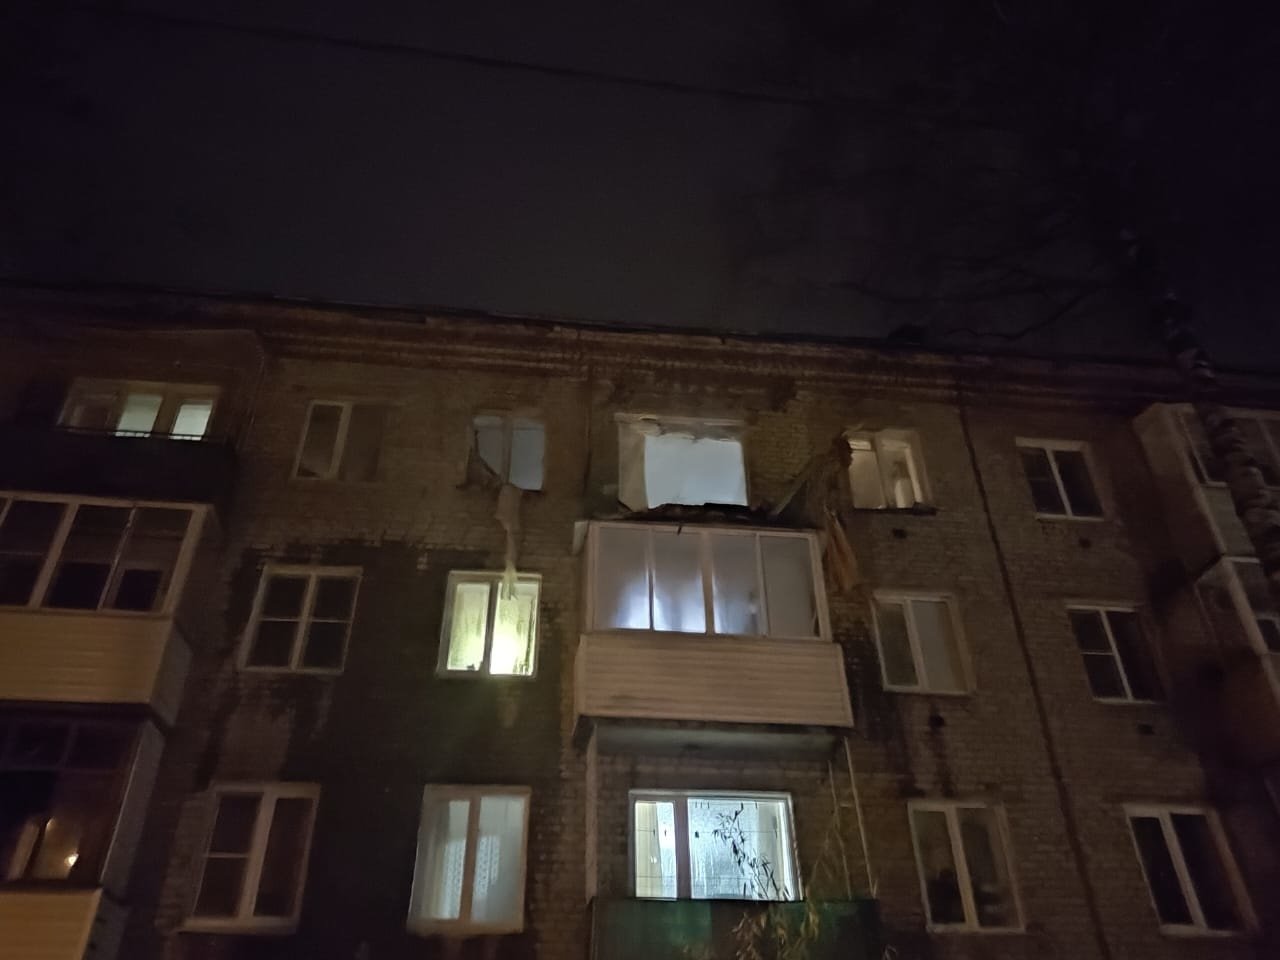 Человек пострадал из-за взрыва газового баллона в жилом доме в Подмосковье